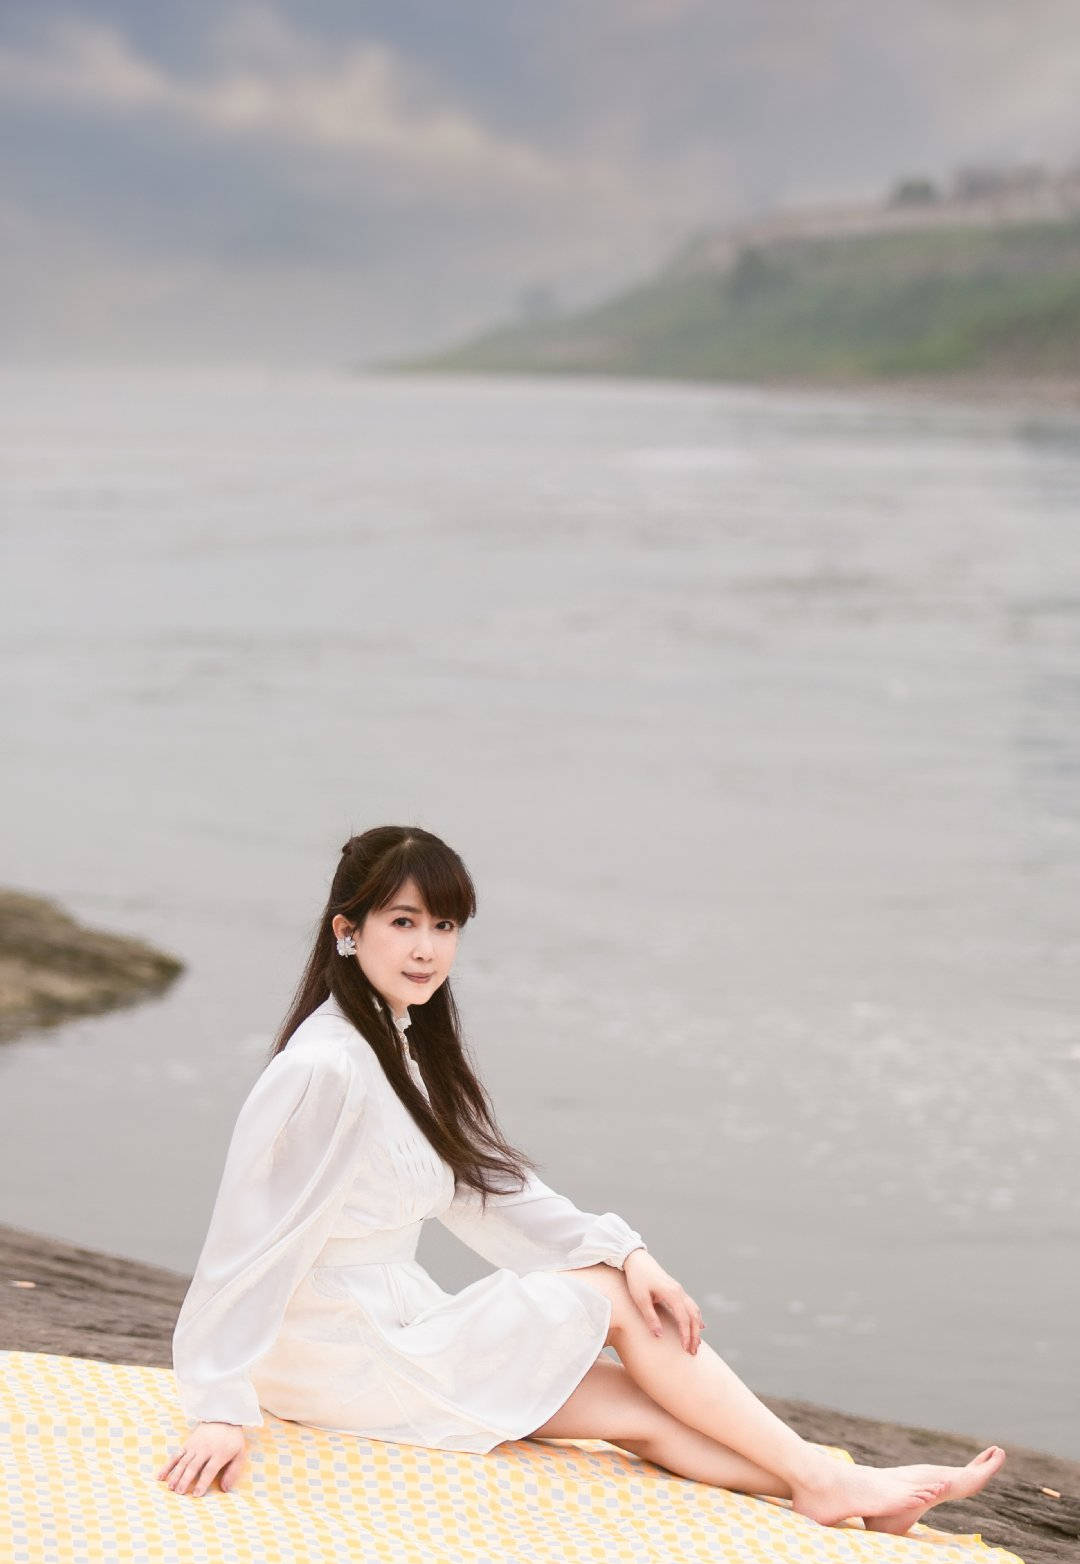 融化在夏天的风中~照片中孟庭苇身穿一身白色连衣裙,长发披肩,站在河